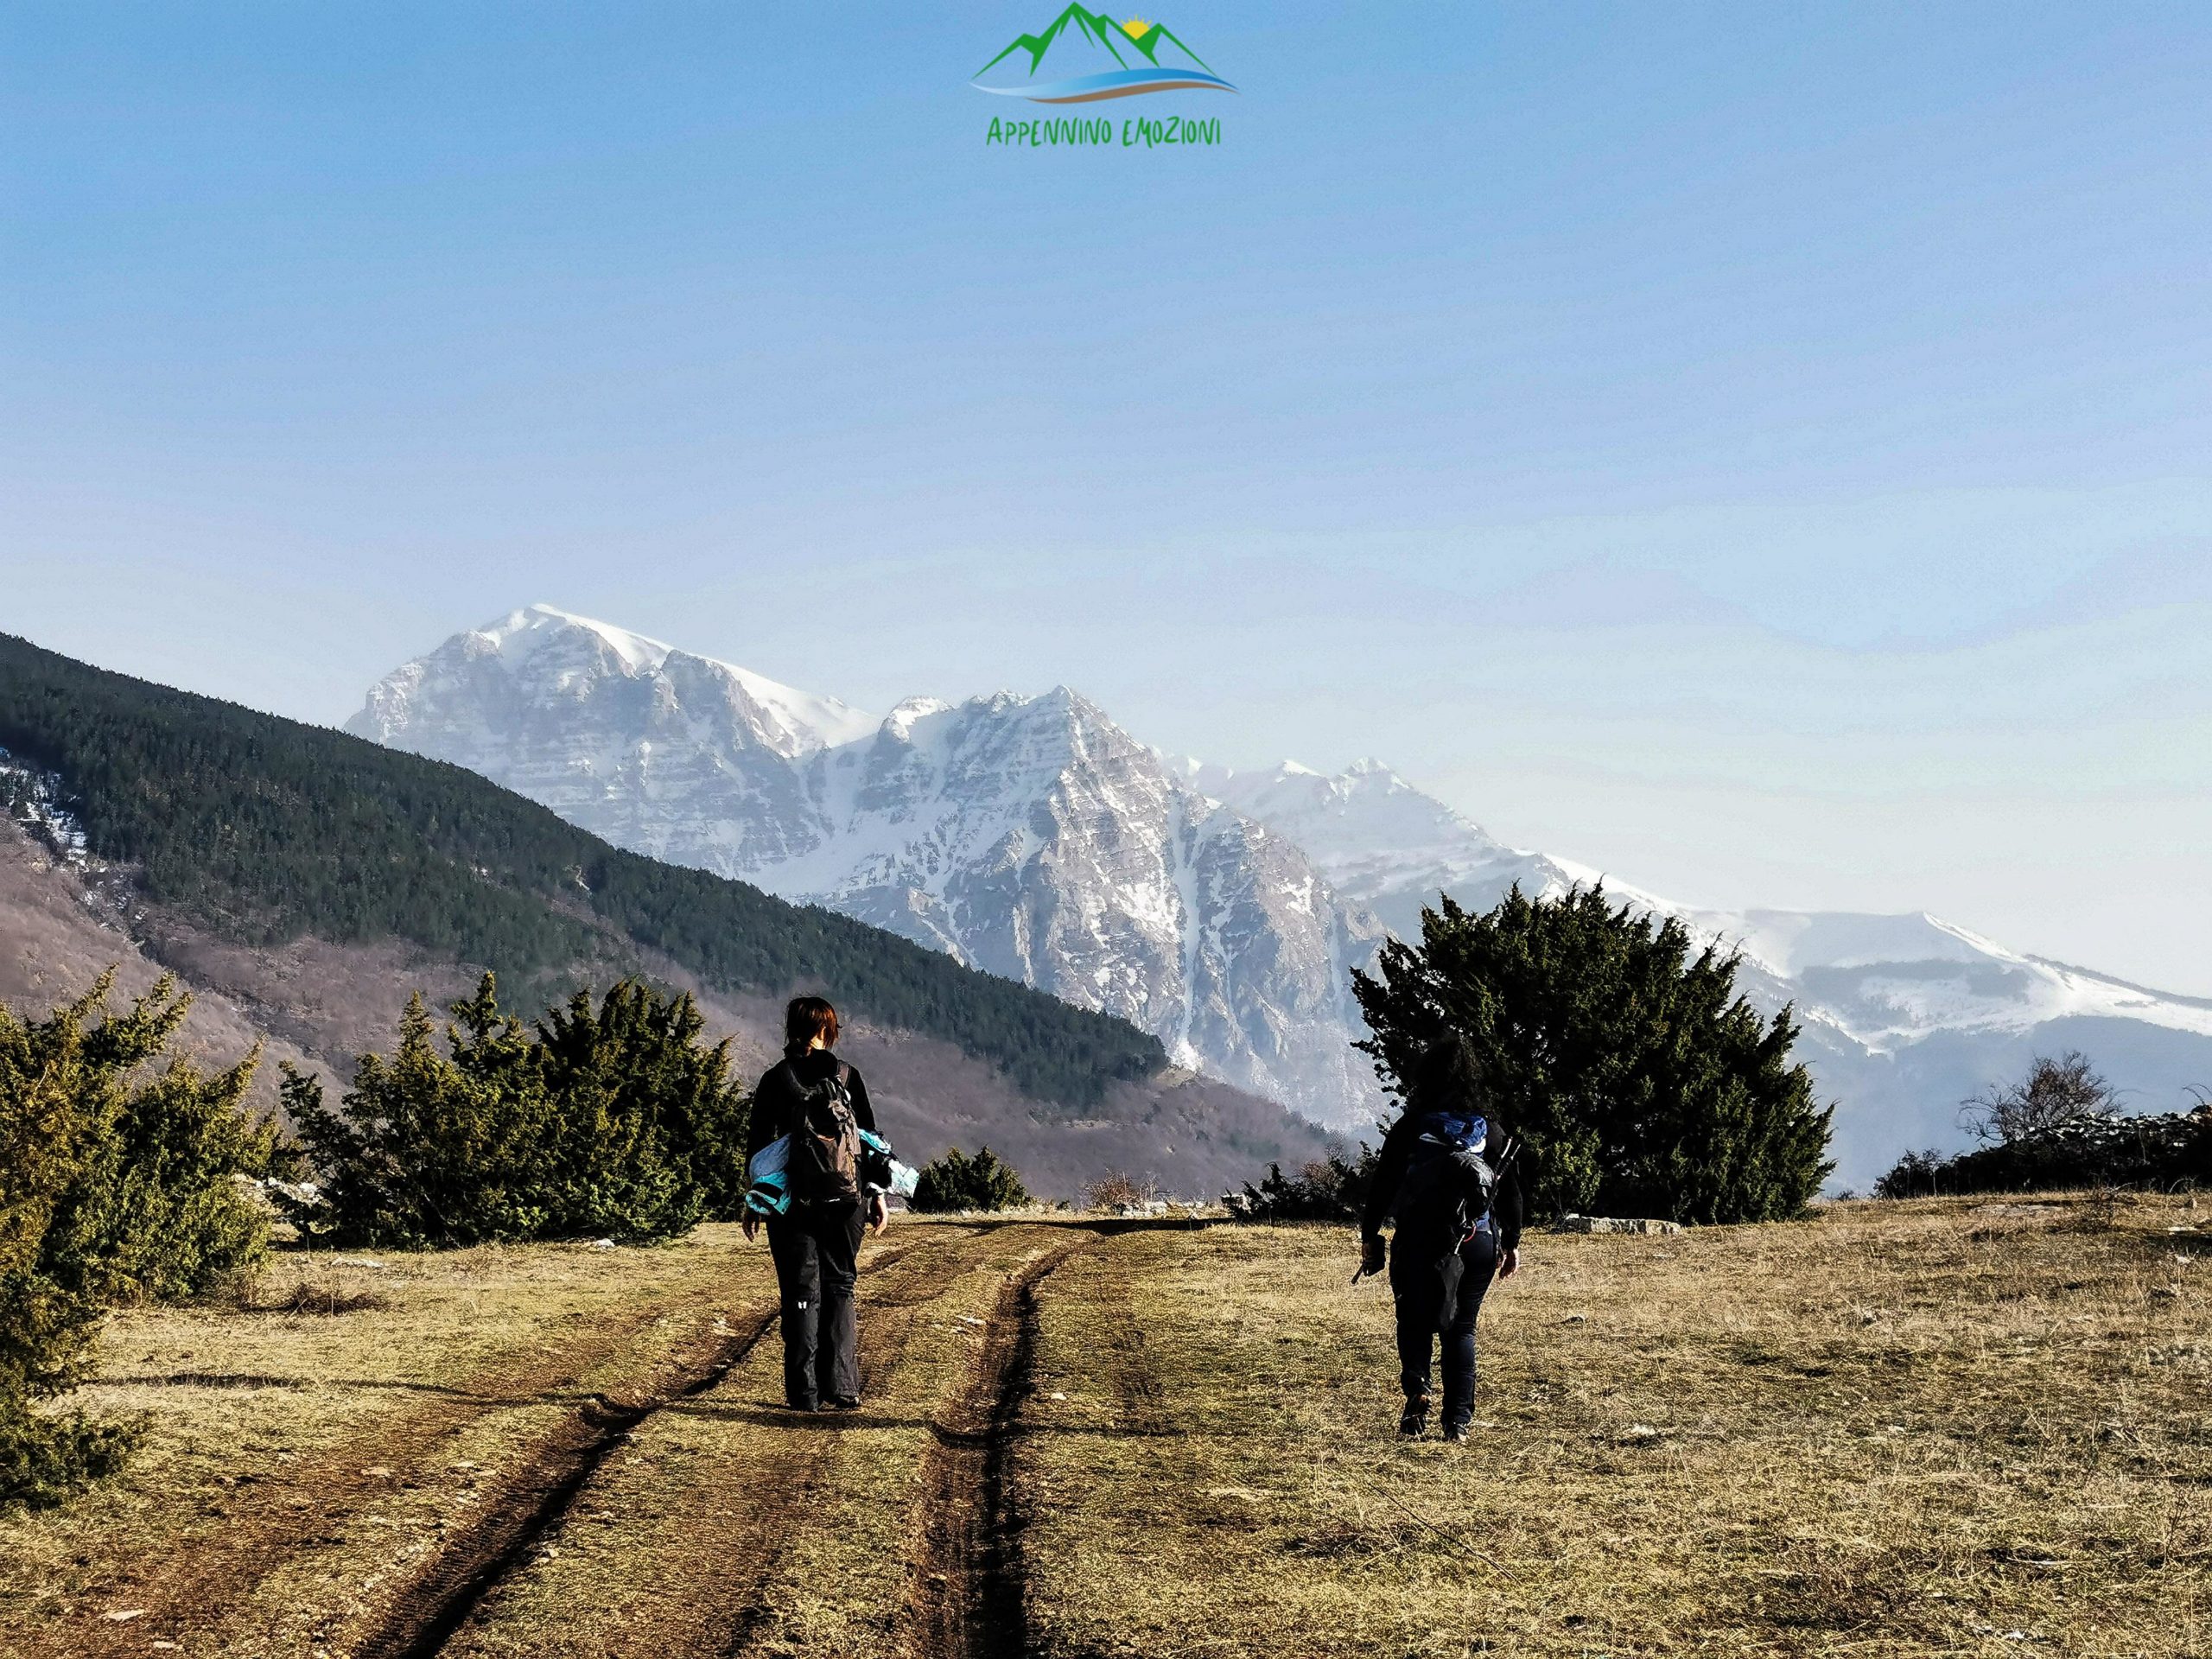 :. 08/10 – Escursioni Sibillini: Macereto, panorami e pascoli